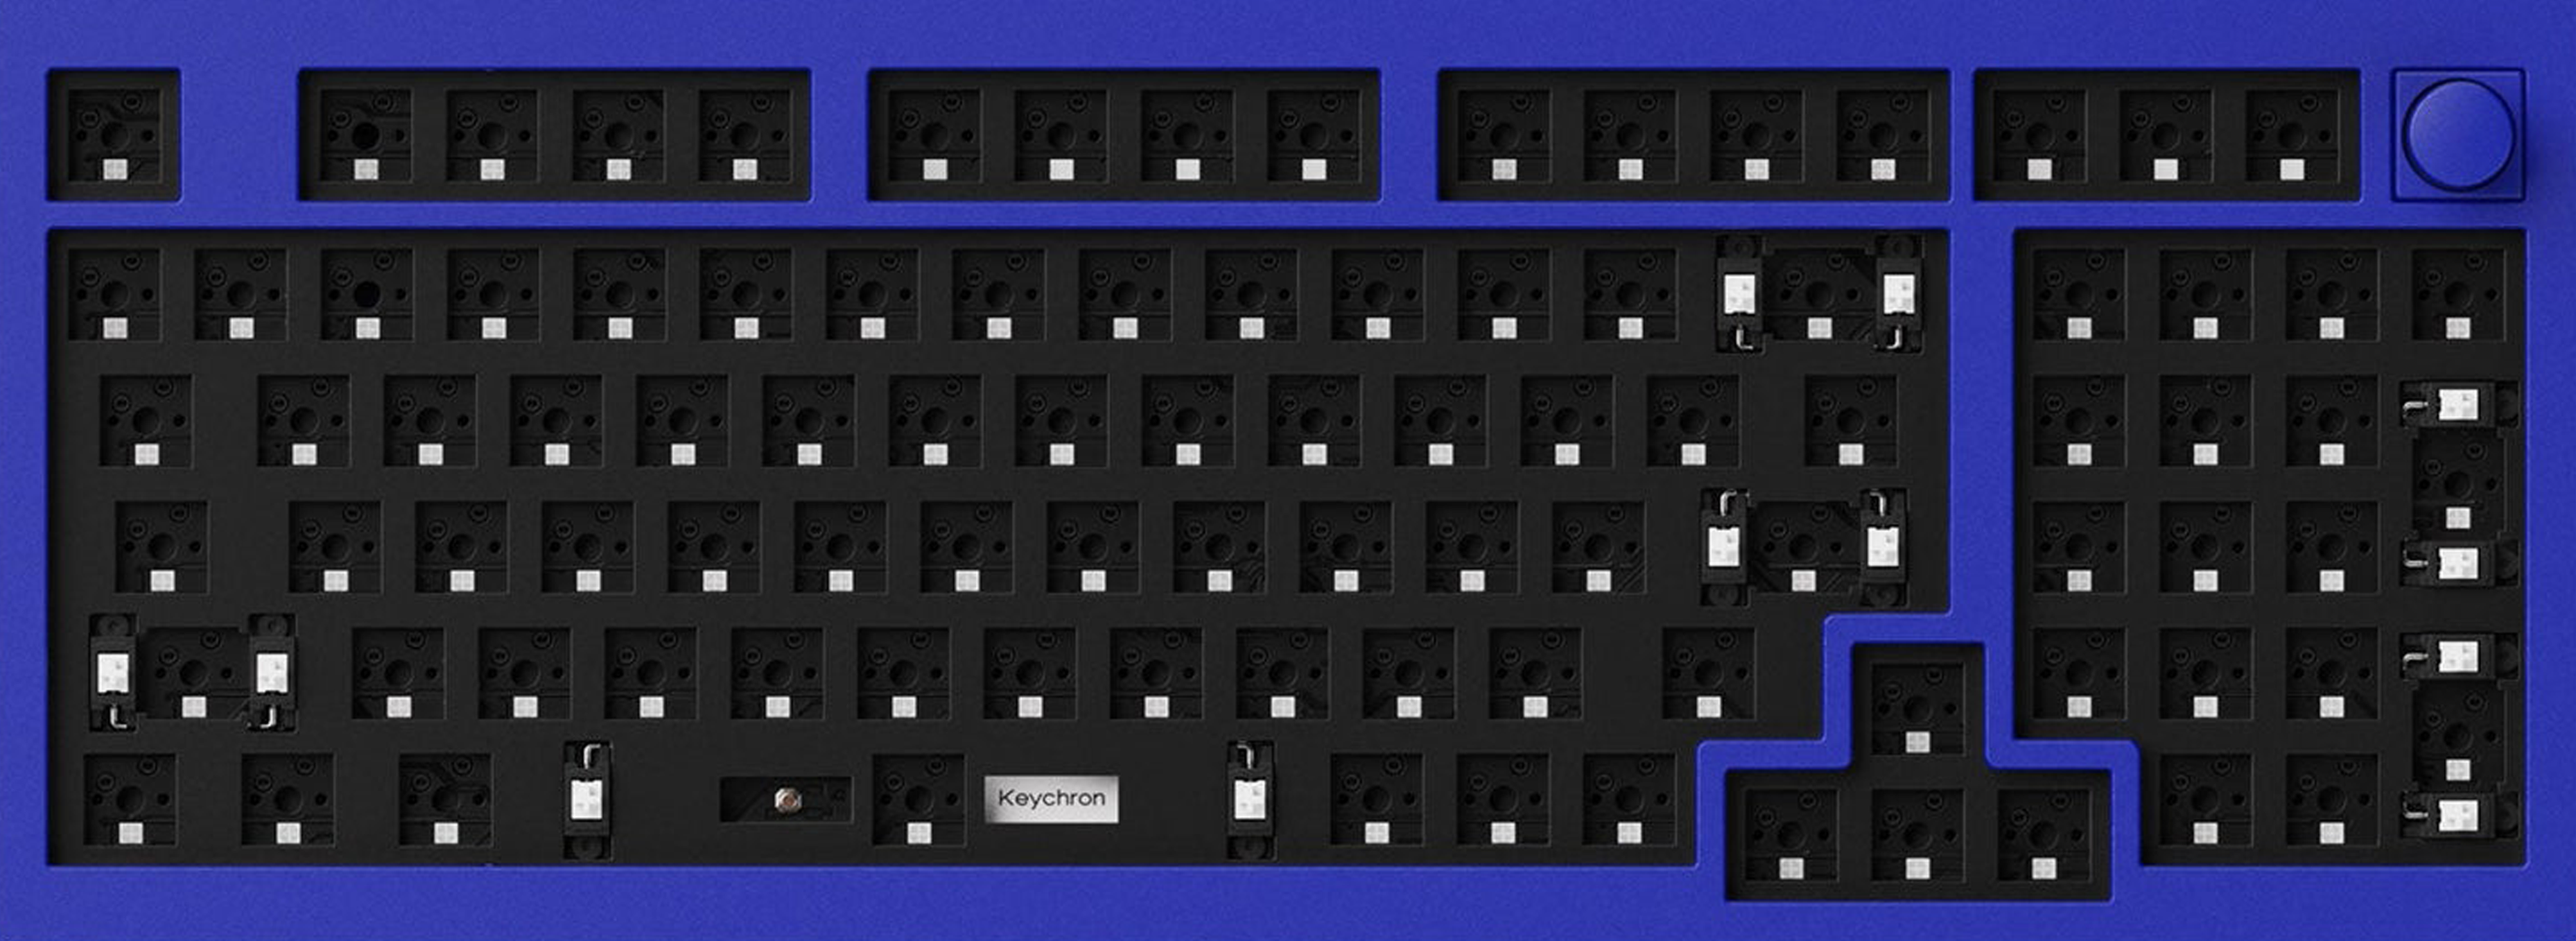 Keychron Q5 96% Mechanical Keyboard